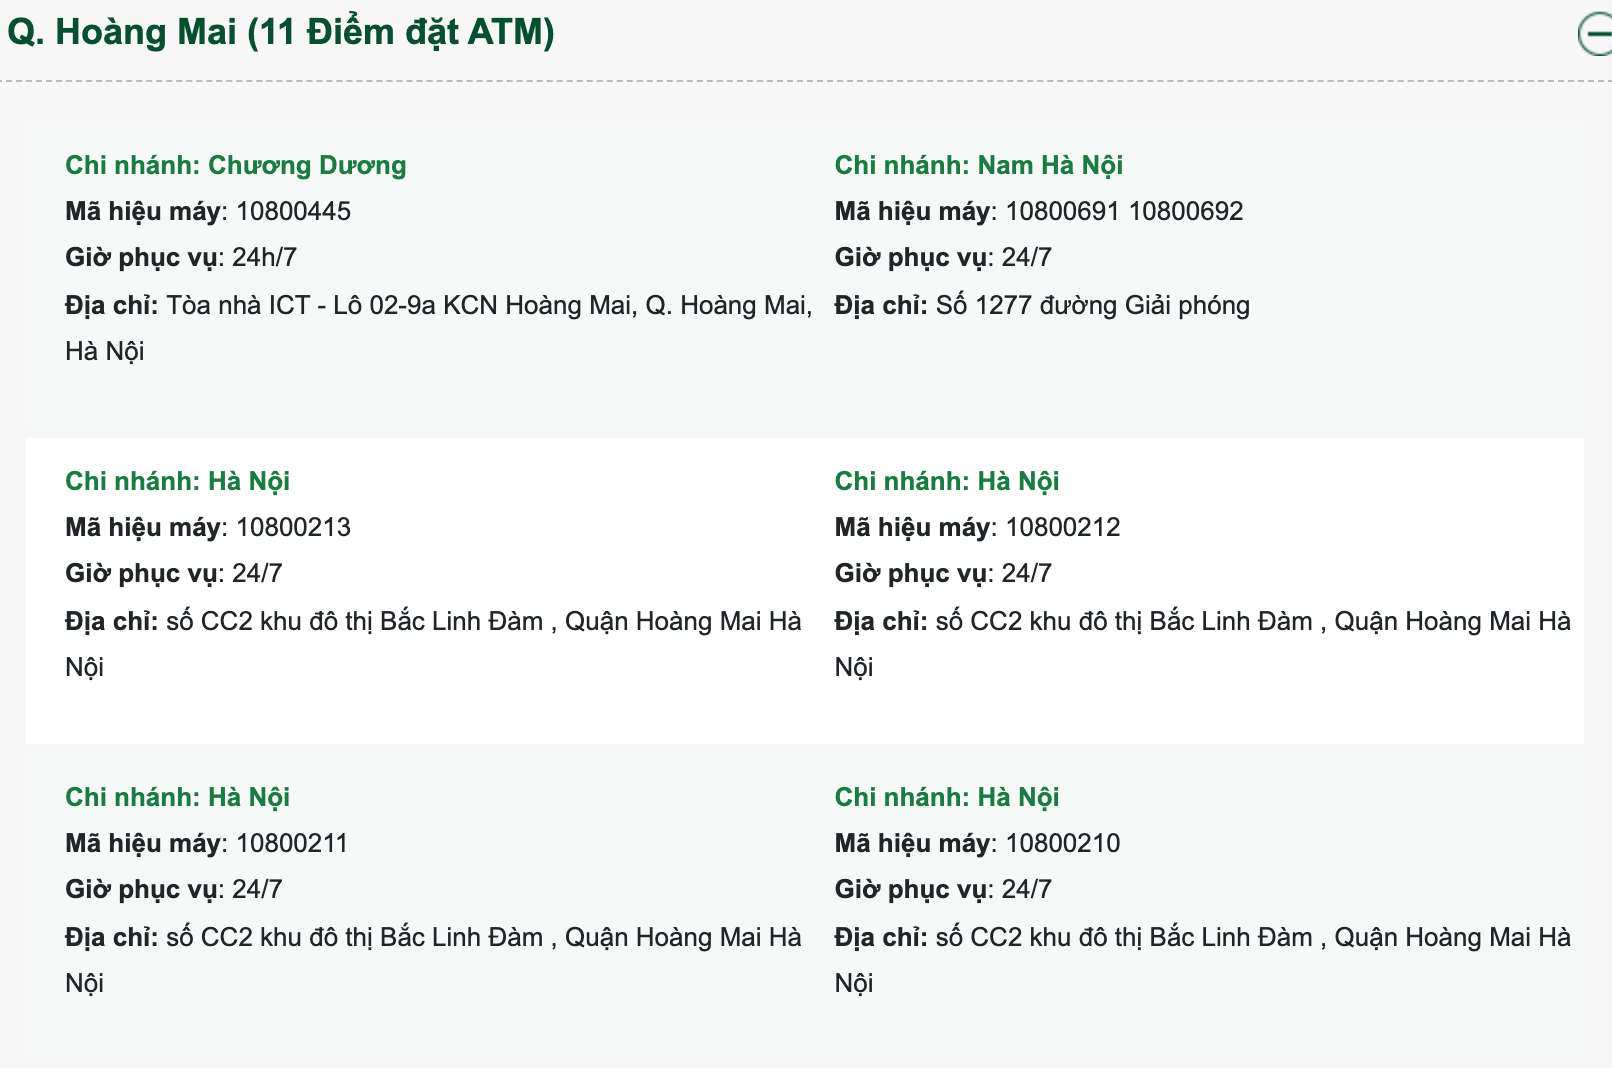 Điểm đặt cây ATM Vietcombank quận Hoàng Mai Hà Nội gần nhất. Nguồn Vietcombank